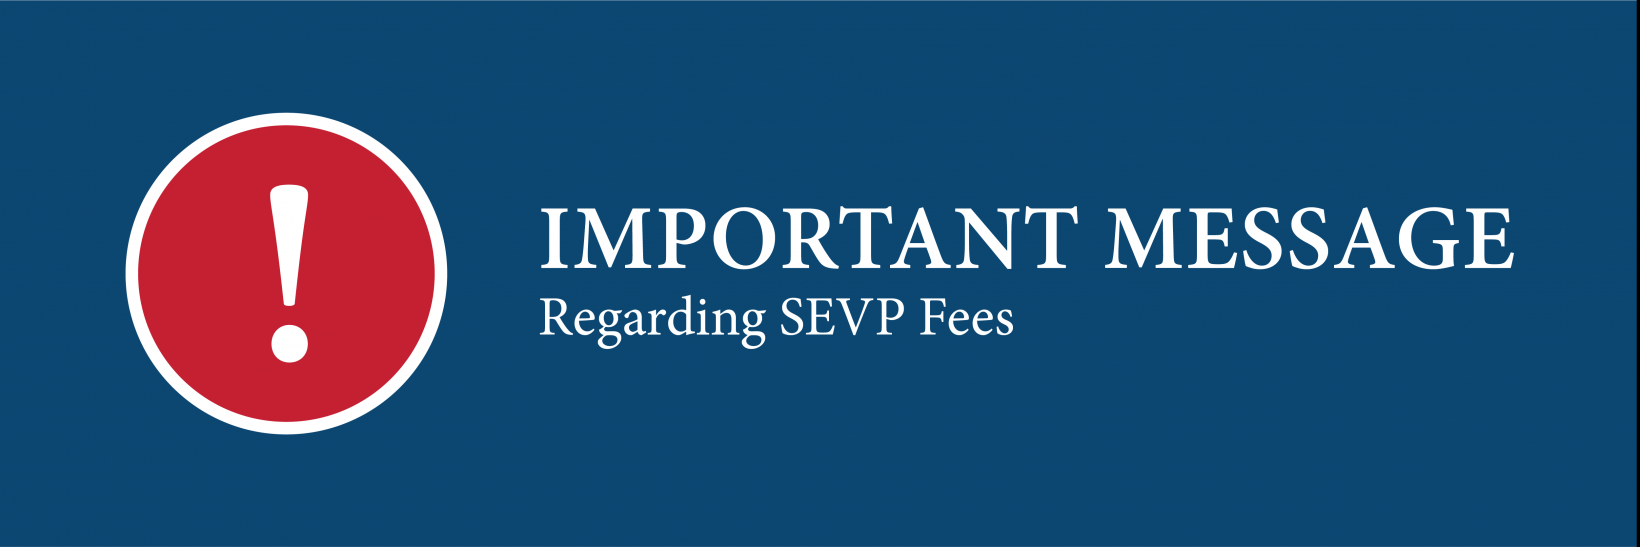 Important Message Regarding SEVP Fees